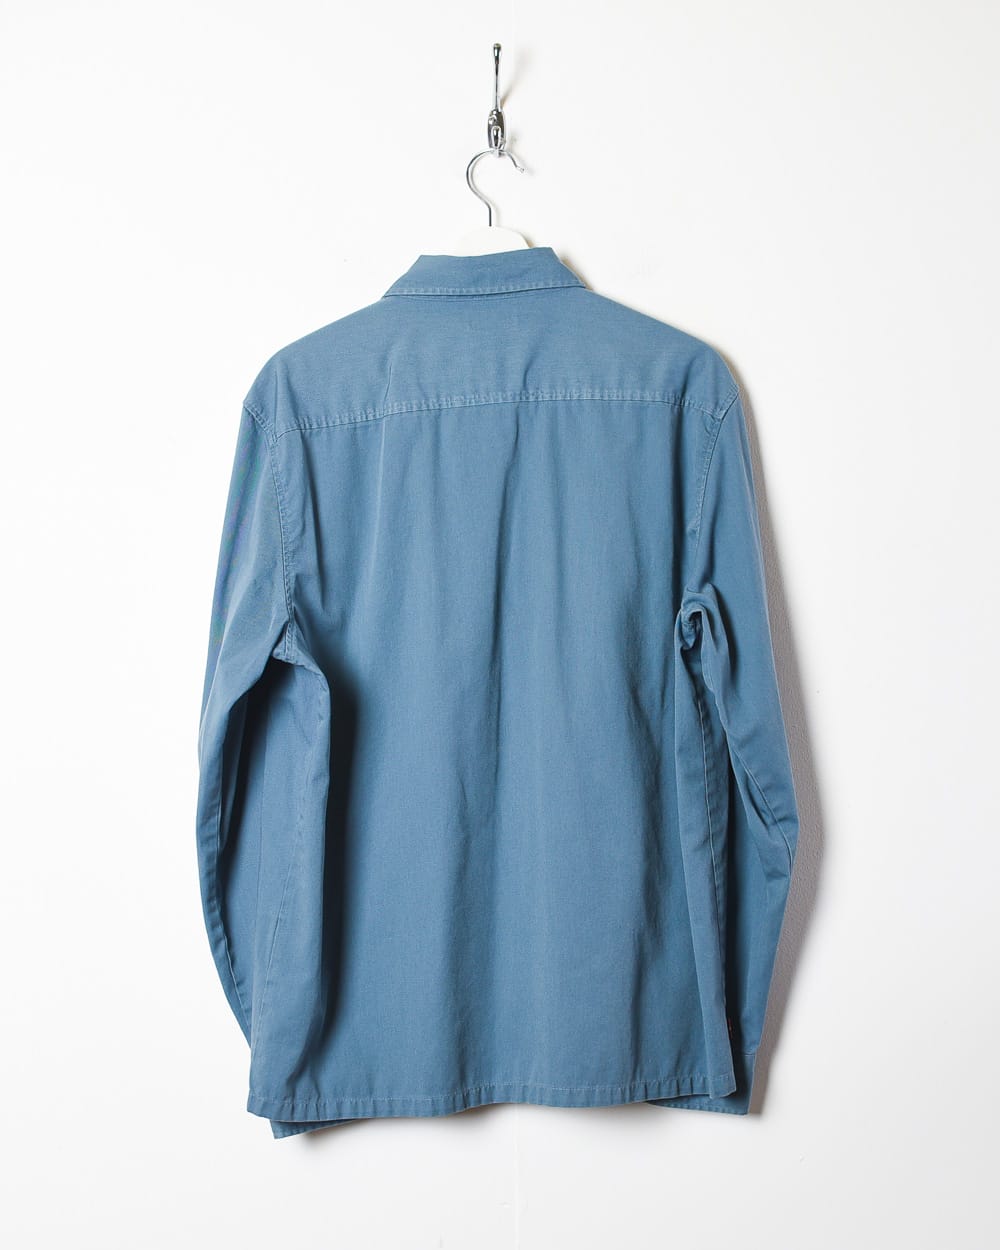 Blue Levi's Shirt - Medium